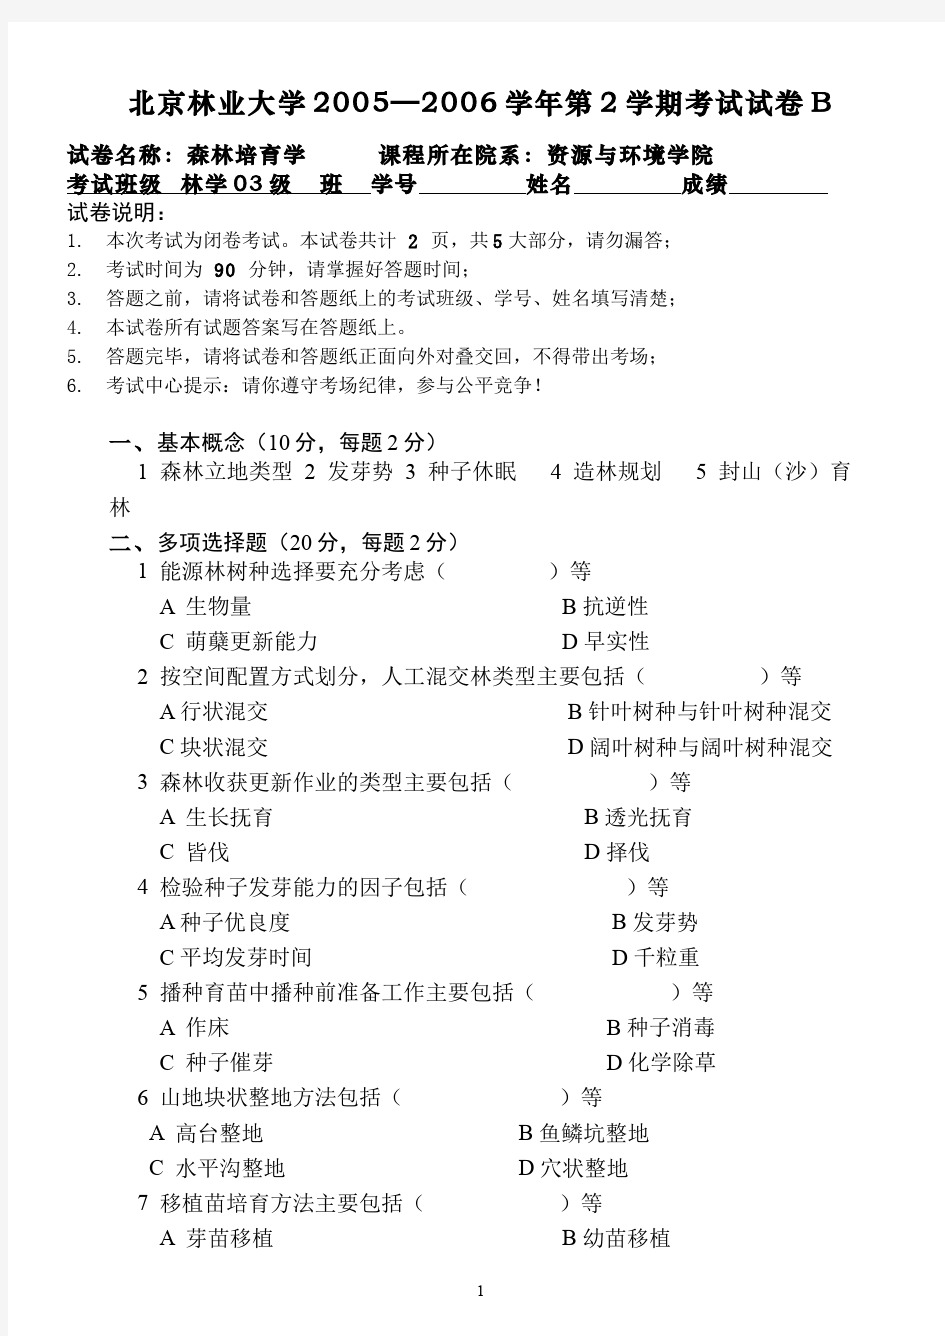 森林培育学__北京林业大学(6)--森林培育学课程期末考试5(试卷及答案题解)